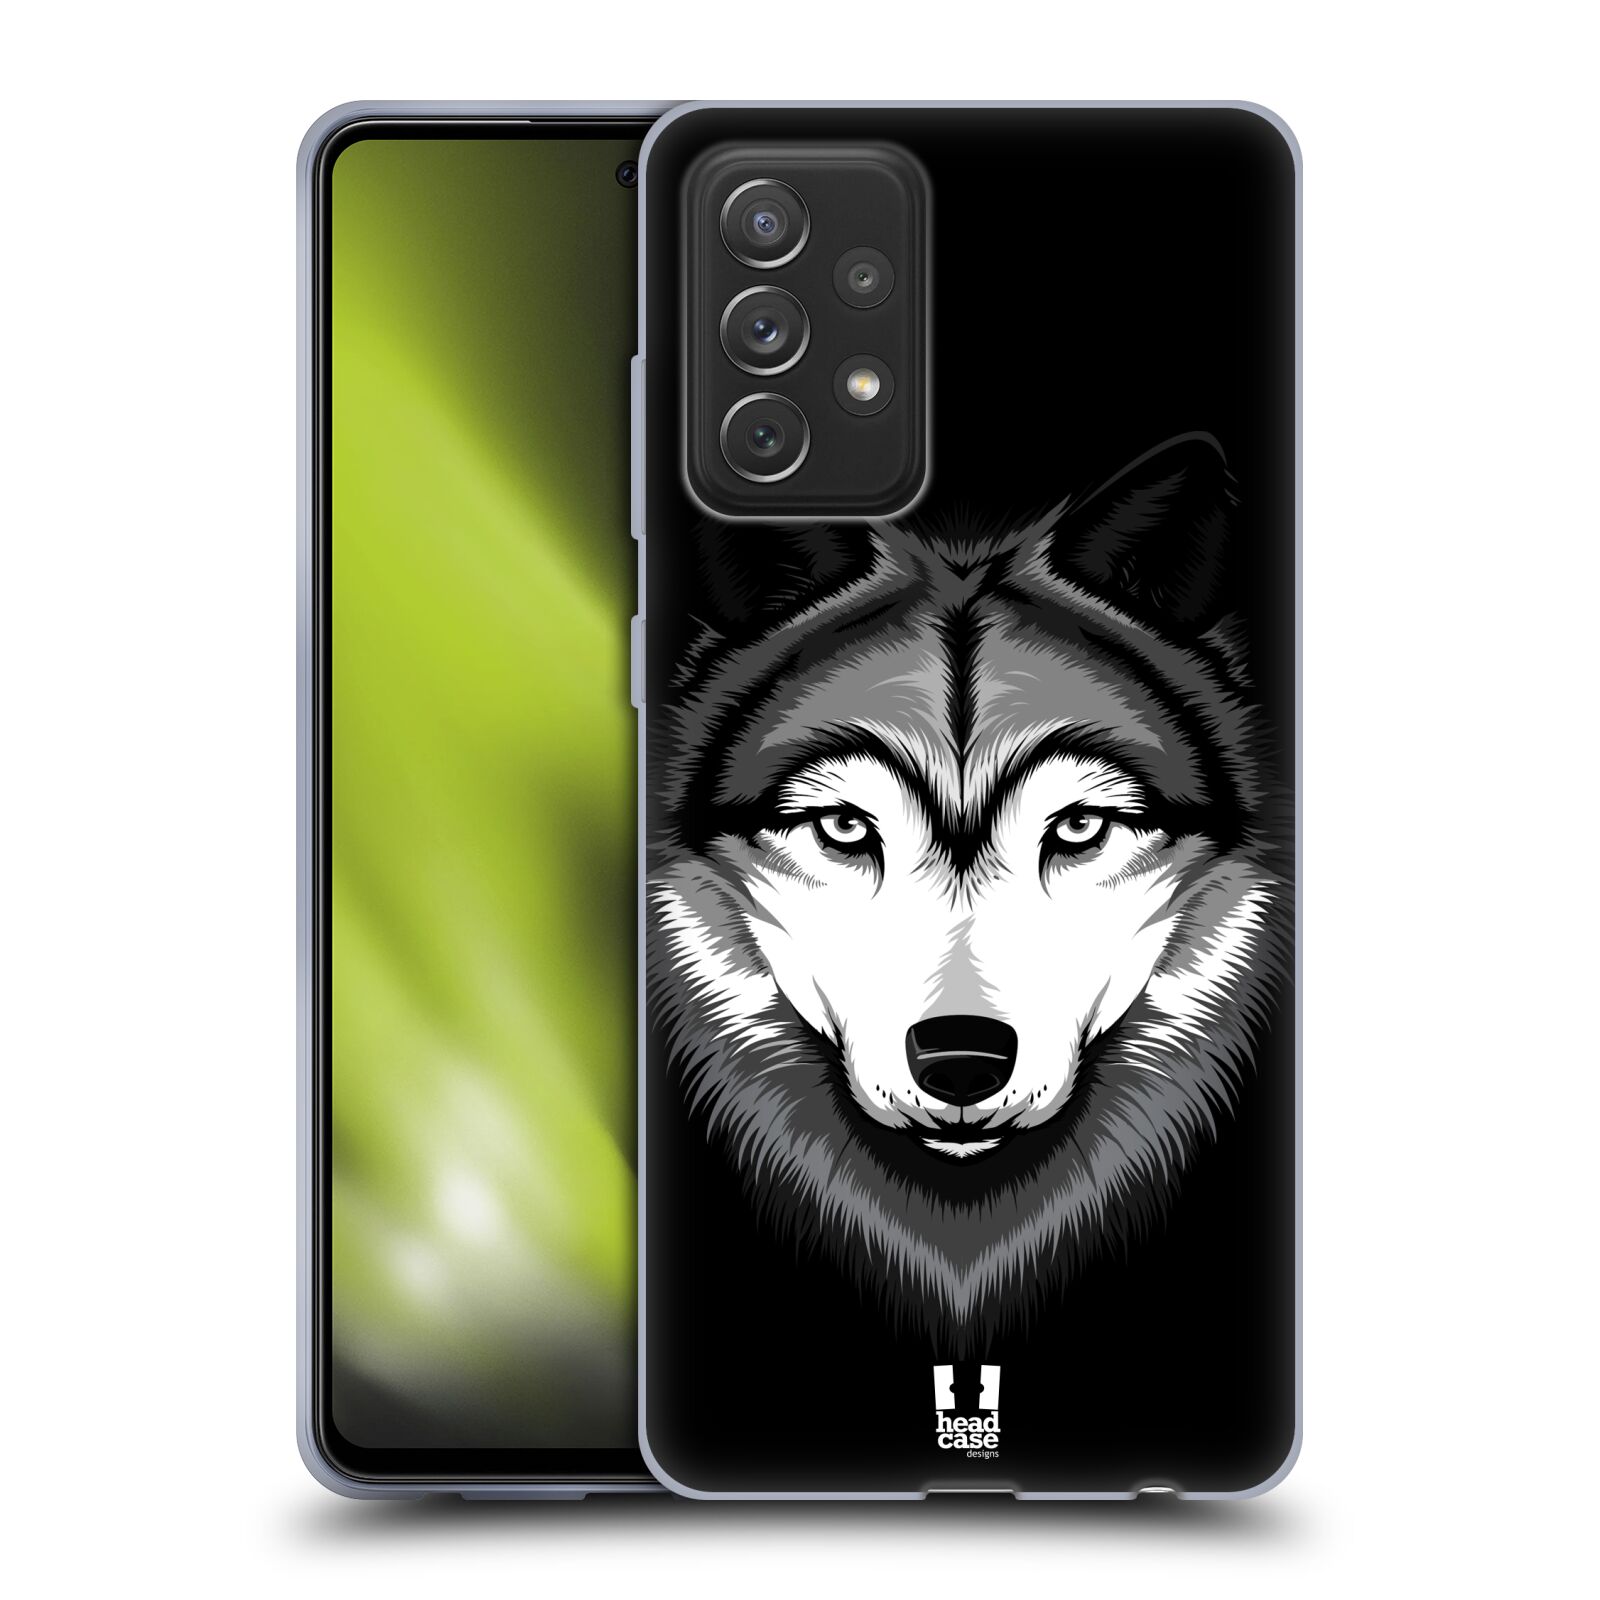 Plastový obal HEAD CASE na mobil Samsung Galaxy A72 / A72 5G vzor Zvíře kreslená tvář 2 vlk